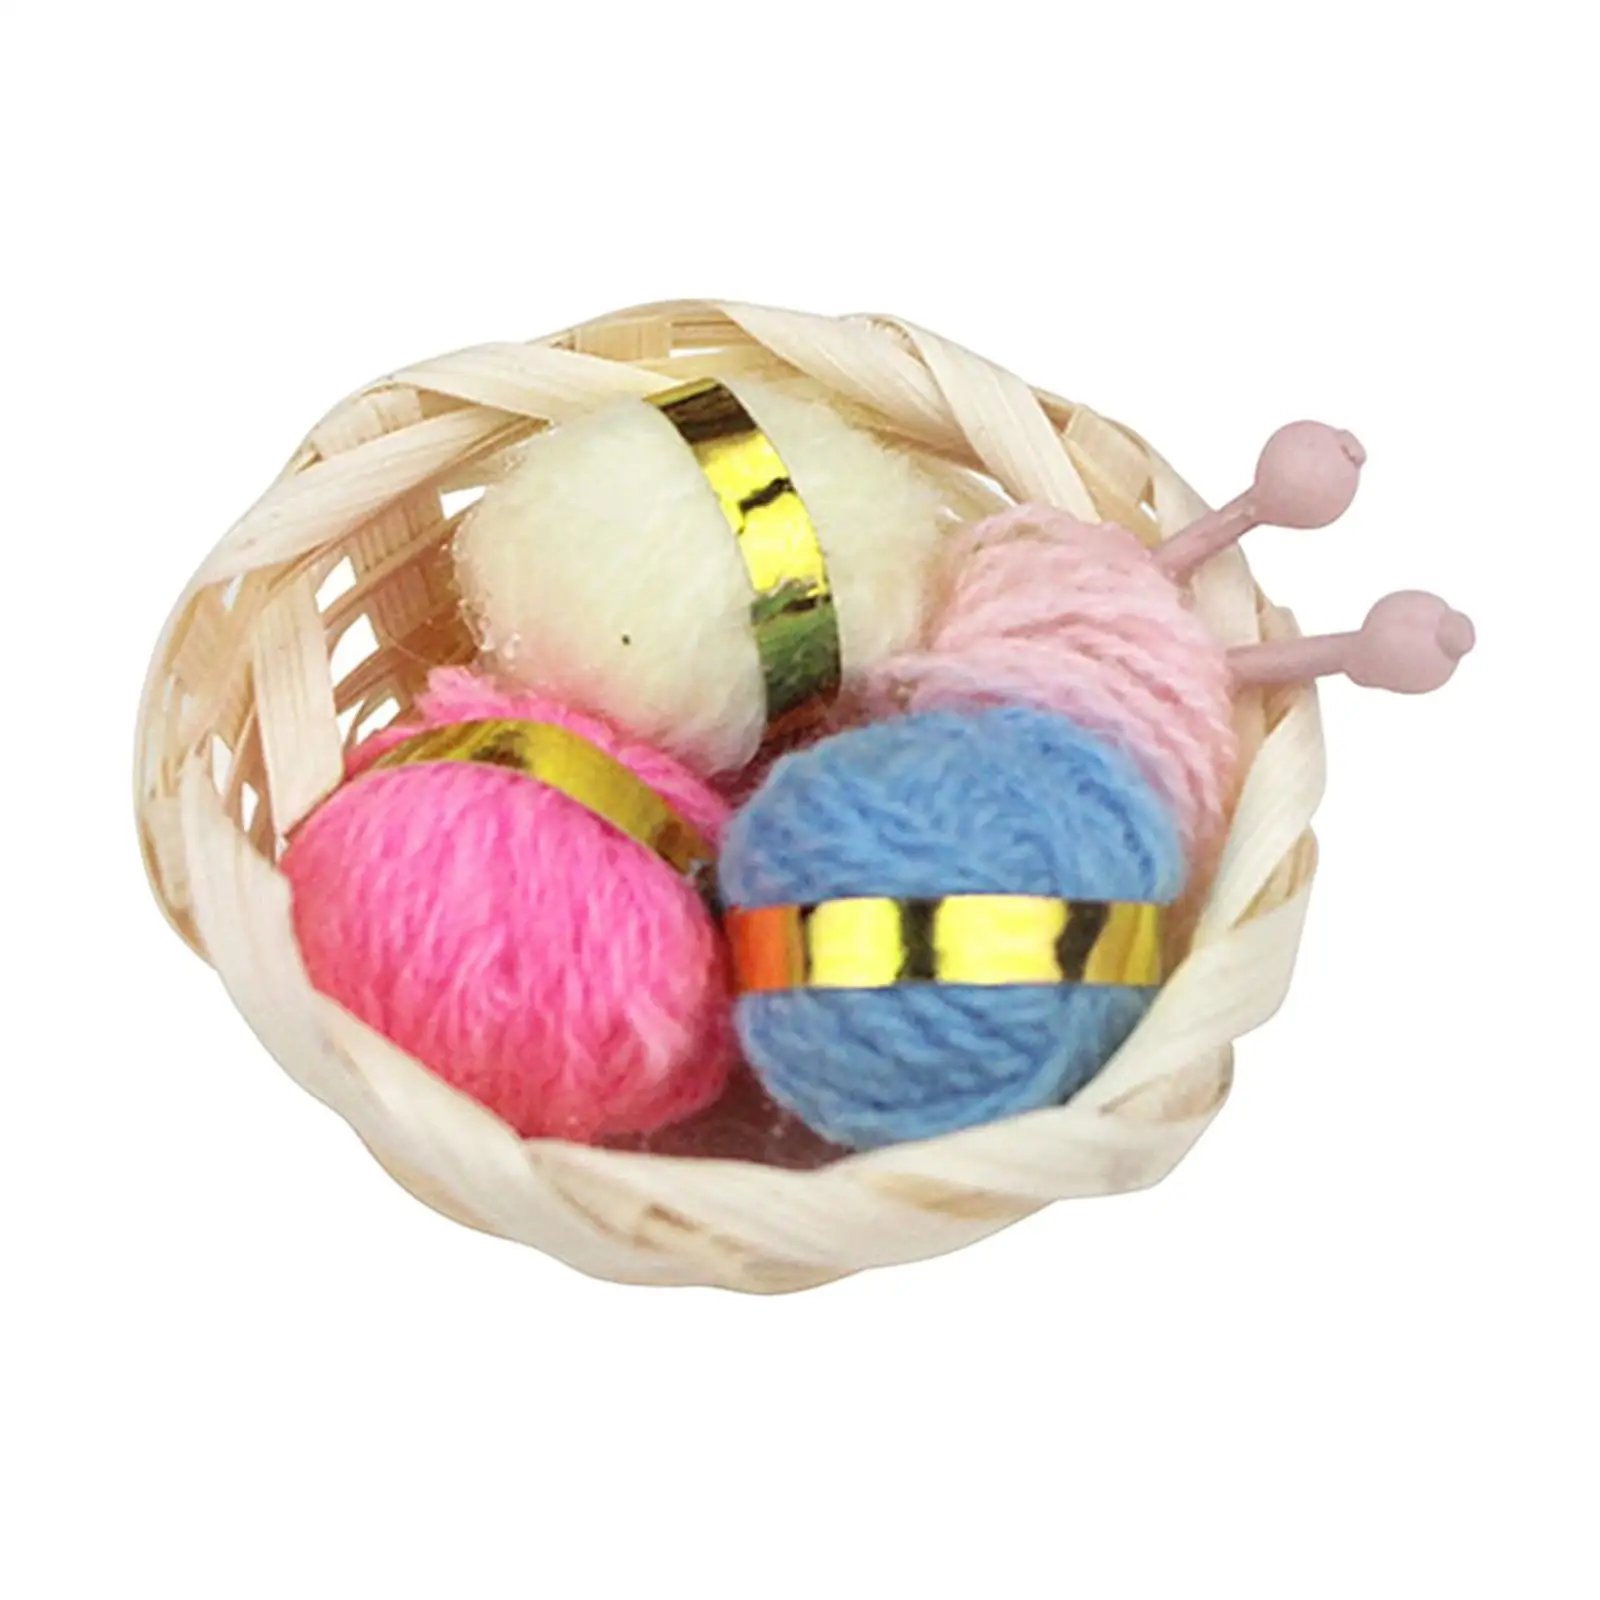 1/12 Dollhouse Woolen Yarn in Basket Craft Project Simulation Craft Yarn for Dollhouse Decor Desktop Ornaments Pretend Toy